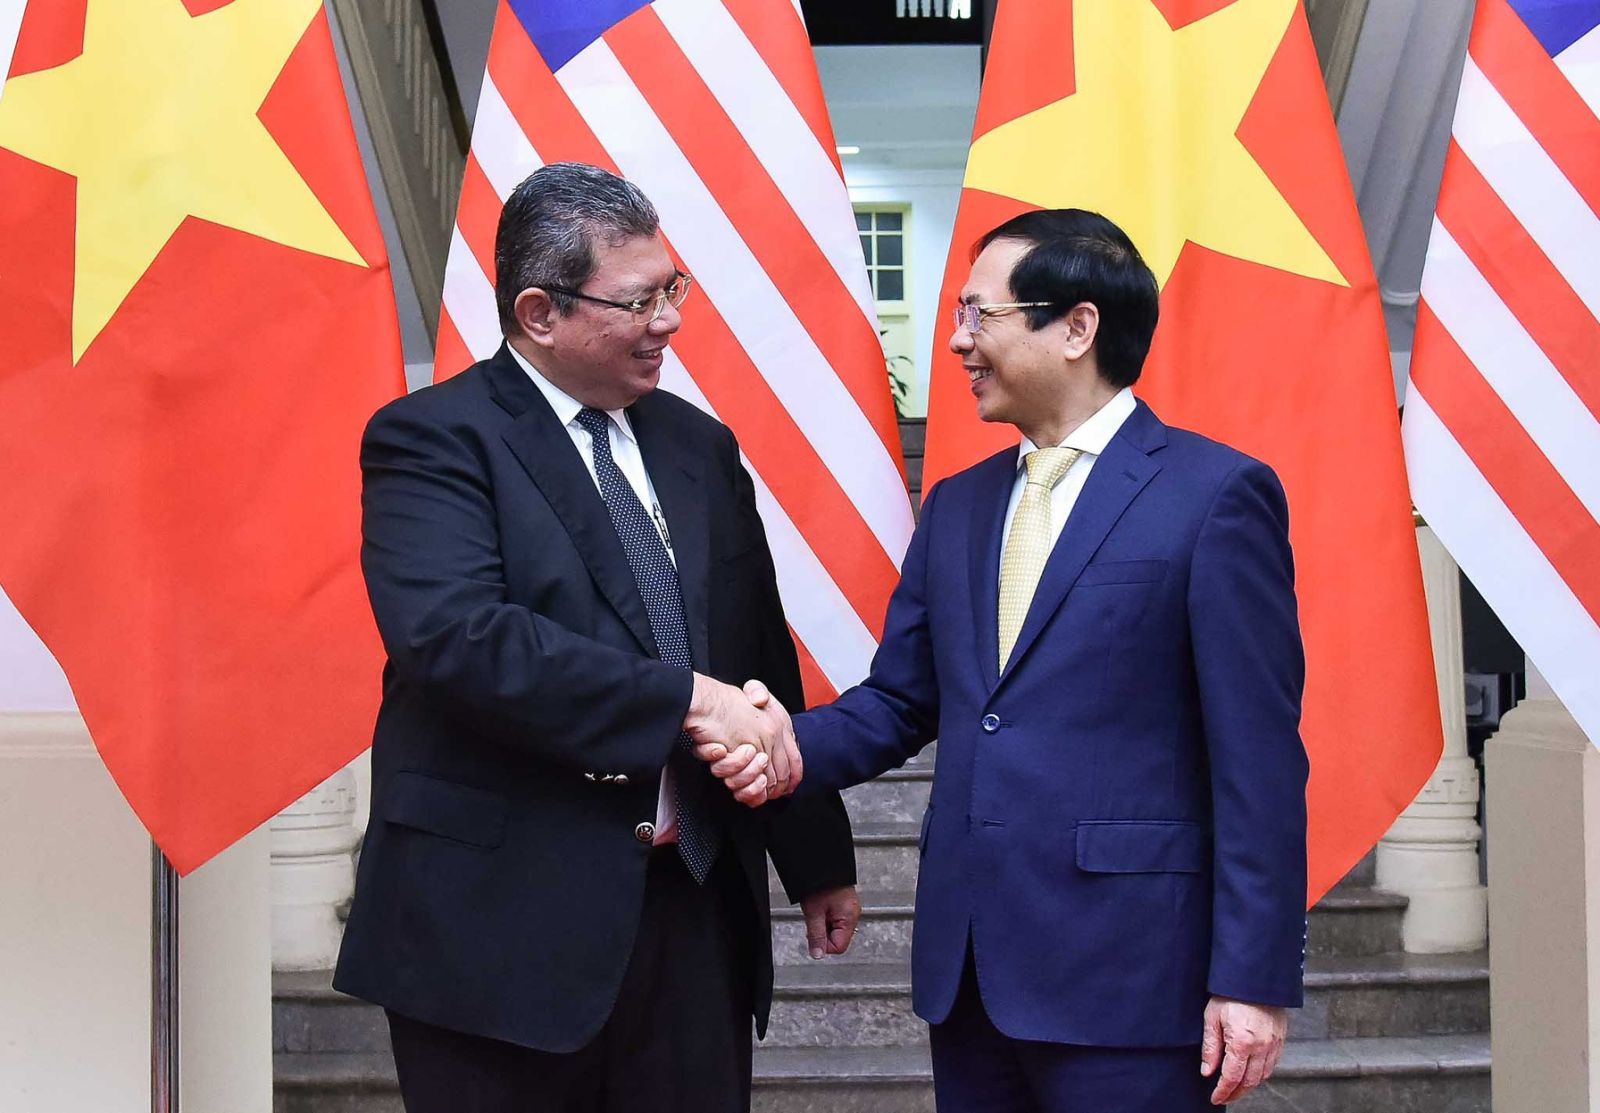 Quan hệ ngoại giao giữa Việt Nam và Malaysia đang đạt được những bước tiến quan trọng. Cả hai nước đều cố gắng để duy trì và thắt chặt mối quan hệ này. Hãy đến xem các sản phẩm liên quan đến ngoại giao Việt-Malaysia để hiểu rõ hơn về sự cộng tác và hợp tác chặt chẽ giữa hai nước.